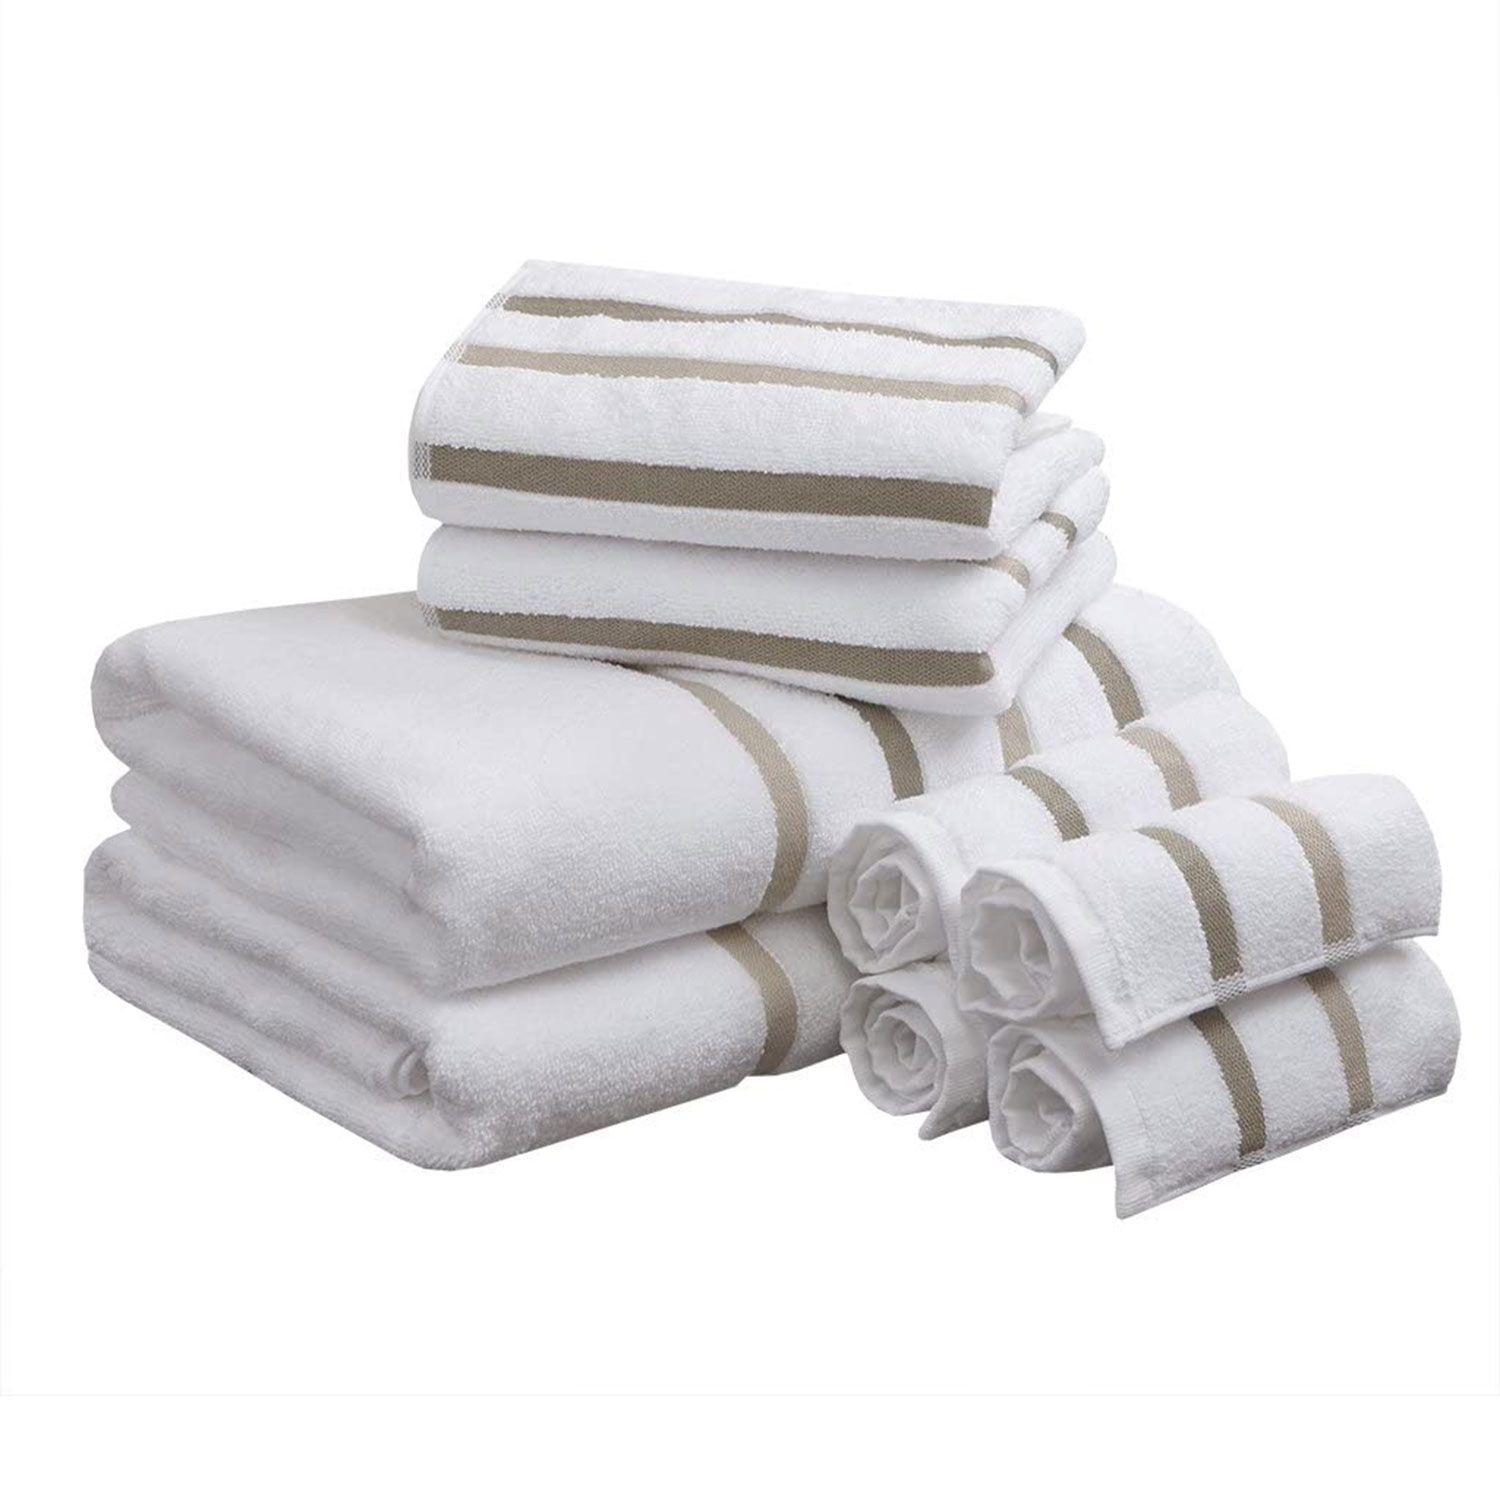 Ręczniki kąpielowe, które klienci nazywają „tak miękkimi i chłonnymi” kosztują tylko 2 USD za sztukę w tym obniżonym zestawie